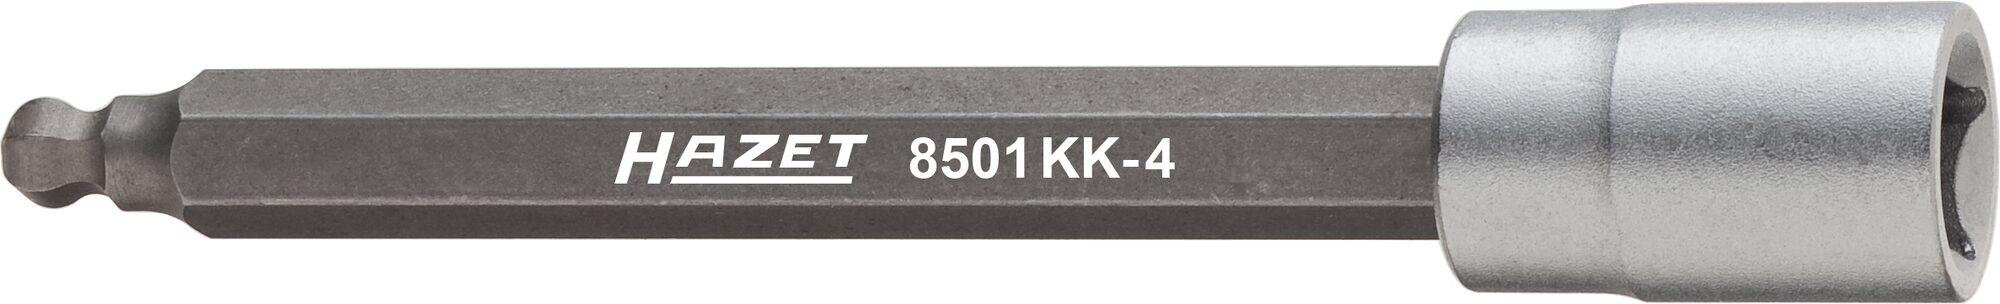 HAZET Drehzahlsensor Kugelkopf Schraubendreher-Steckschlüsseleinsatz 8501KK-4 · Vierkant hohl 6,3 mm (1/4 Zoll) · Innen Sechskant Profil · 4 mm